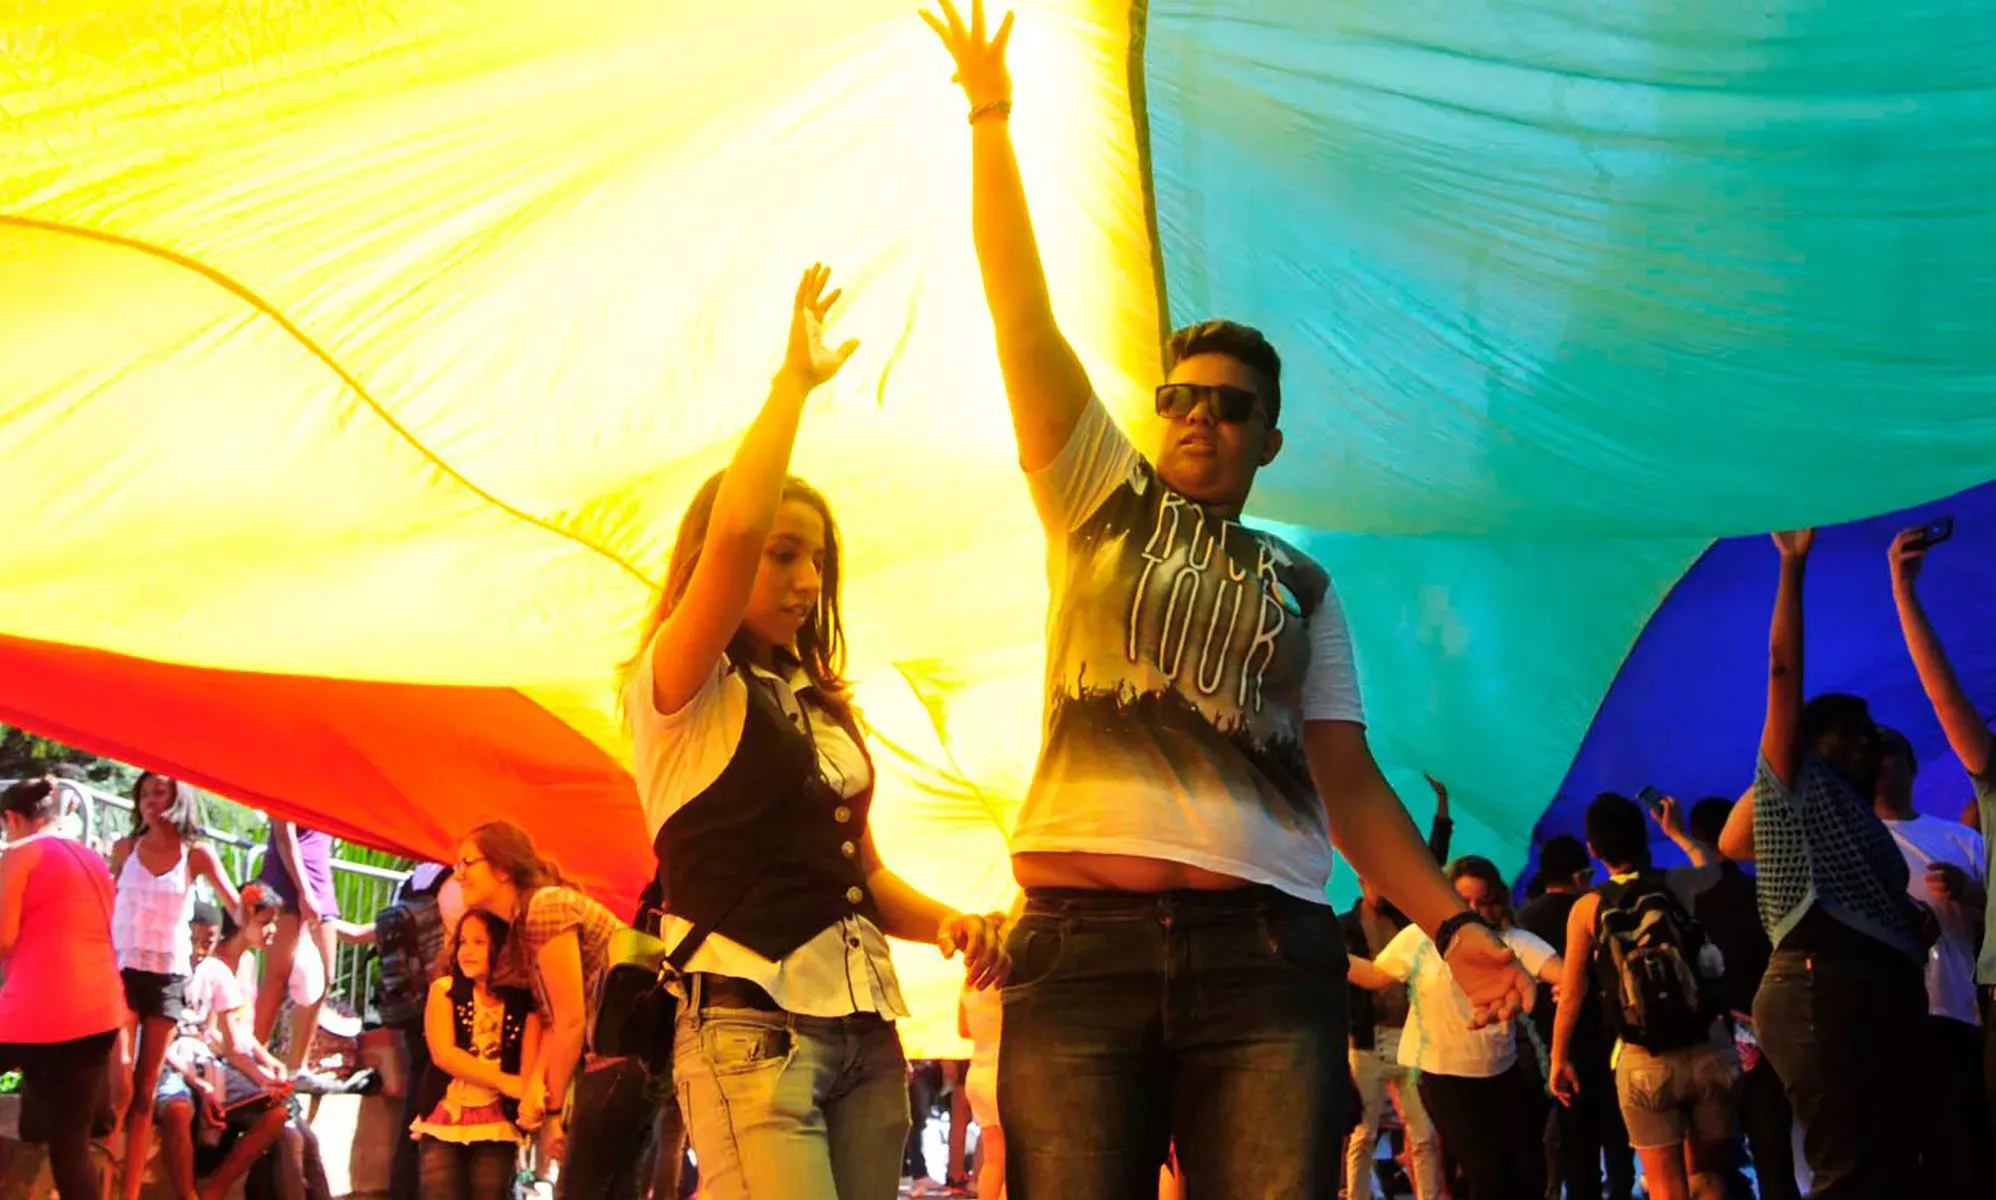 Los insultos homófobos se castigan ahora con penas de cárcel en Brasil, según el Tribunal Supremo